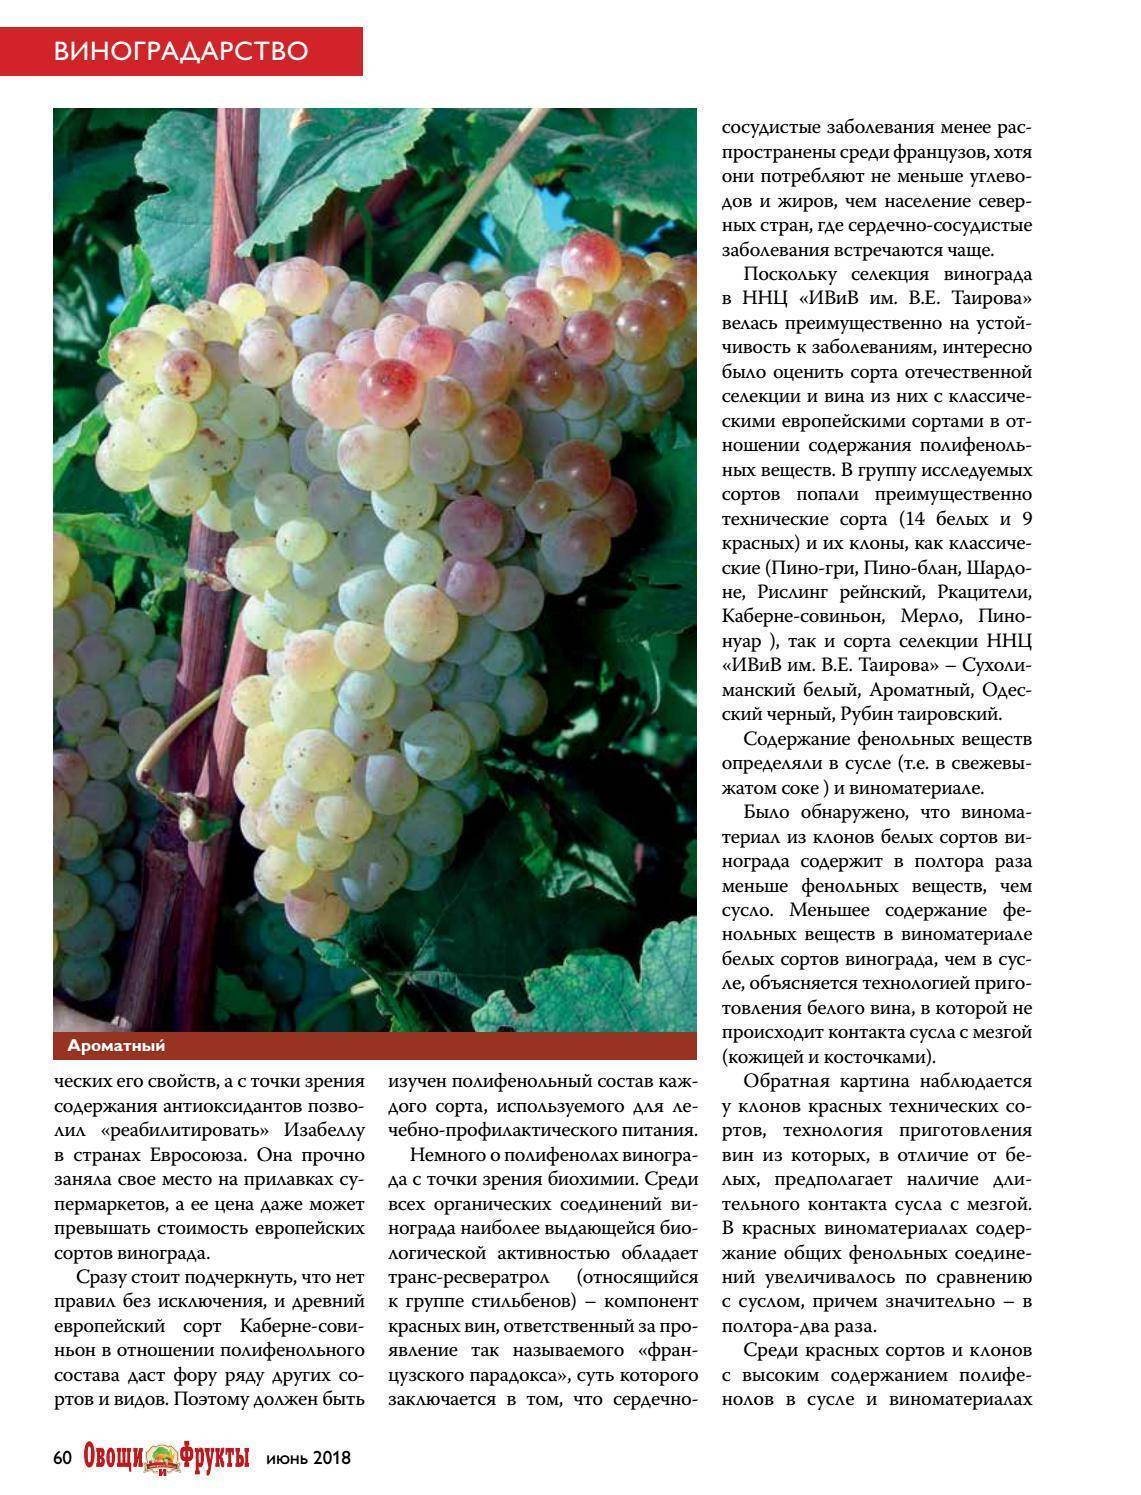 Пино гриджио (пино гри) – белый виноград №1